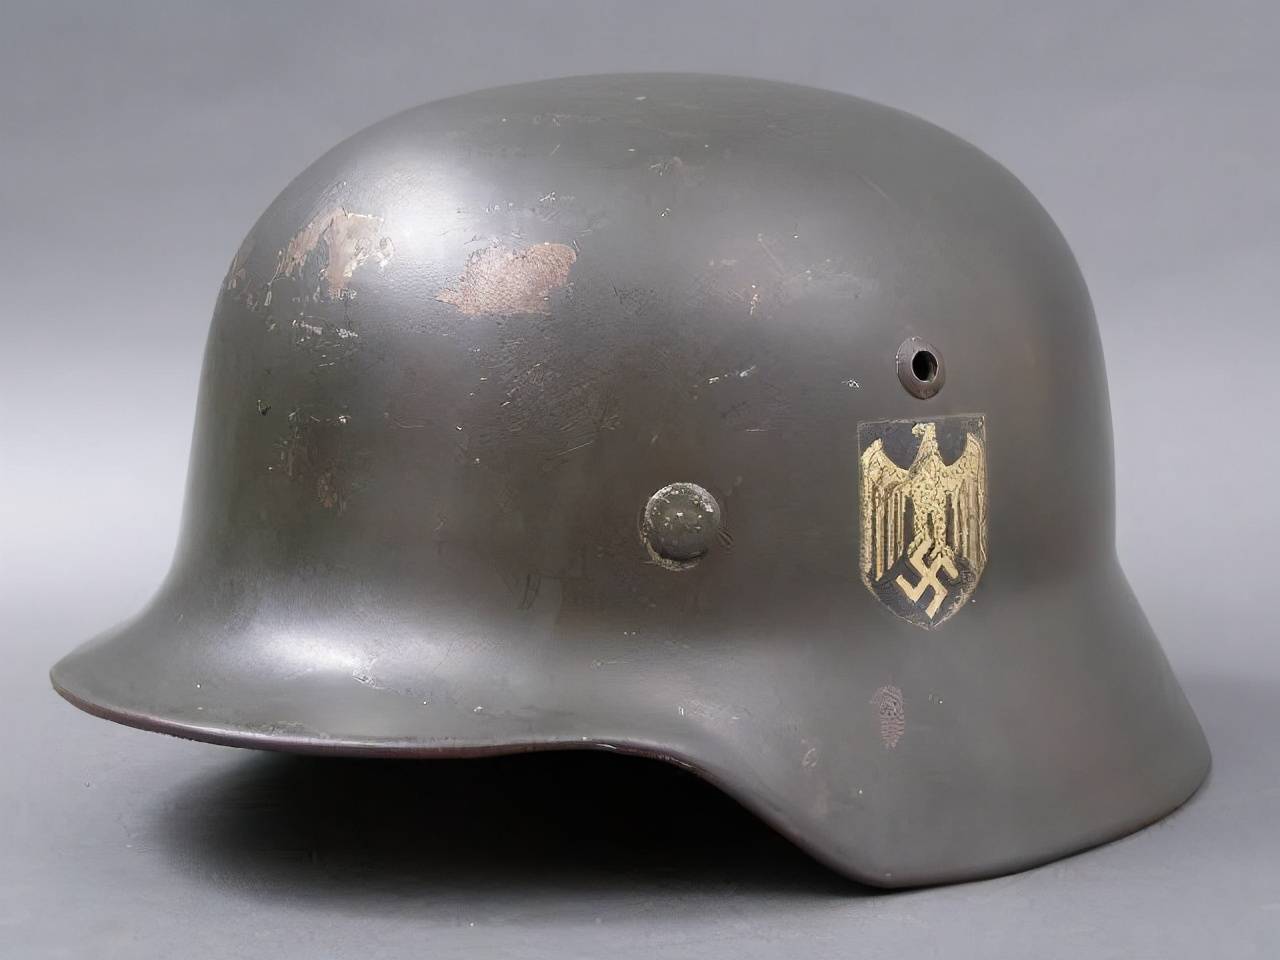 原创德国为伞兵研发的头盔,比m35还好,世界上第一款伞兵专用头盔